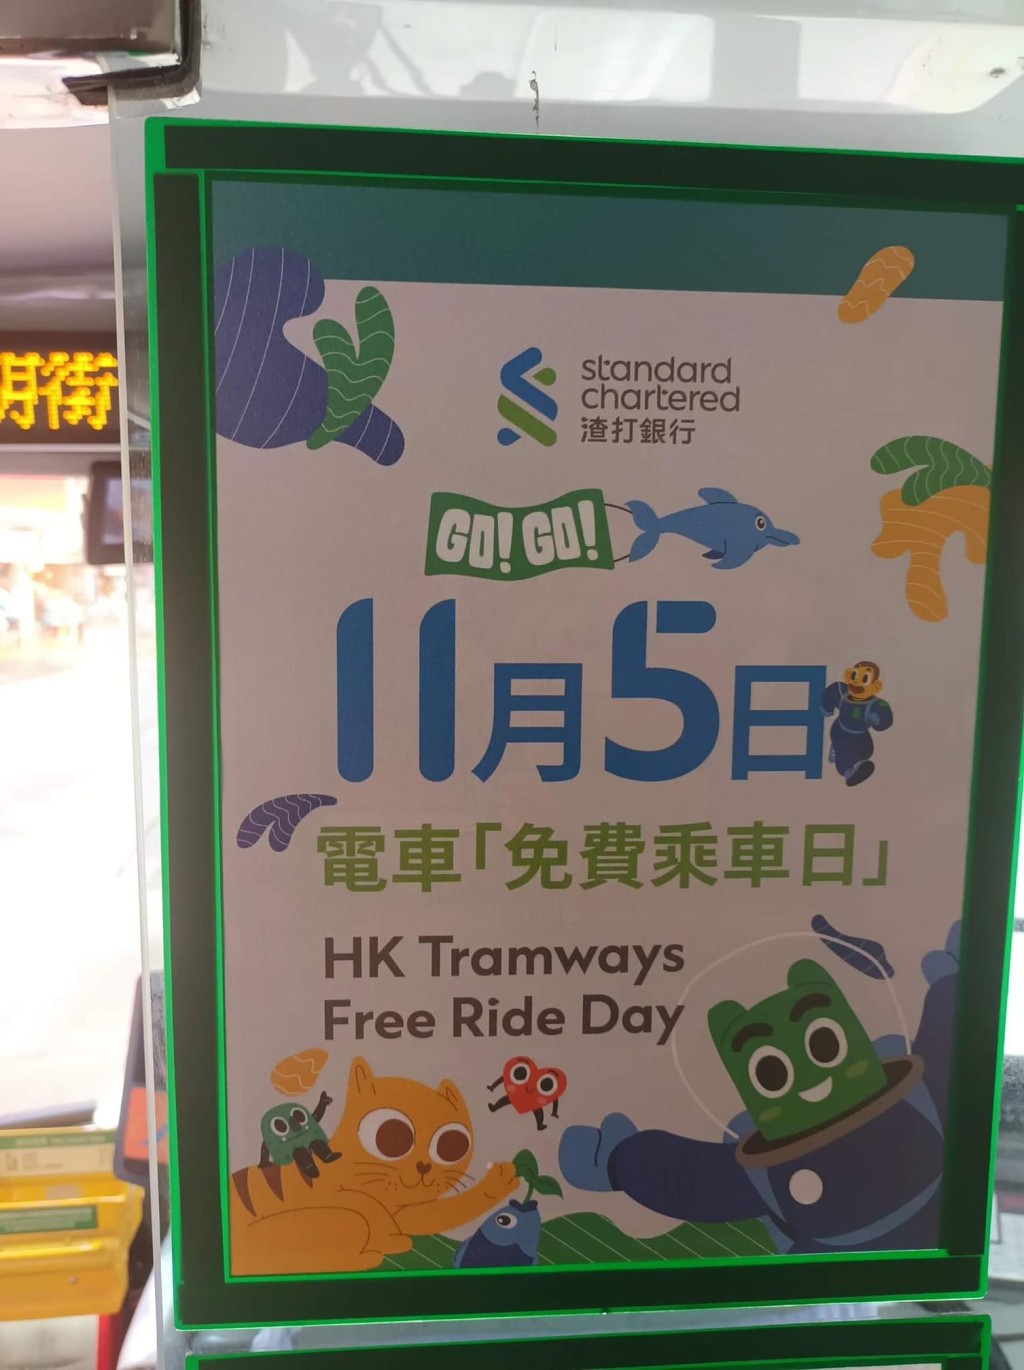 今天是渣打香港免费电车日。网图